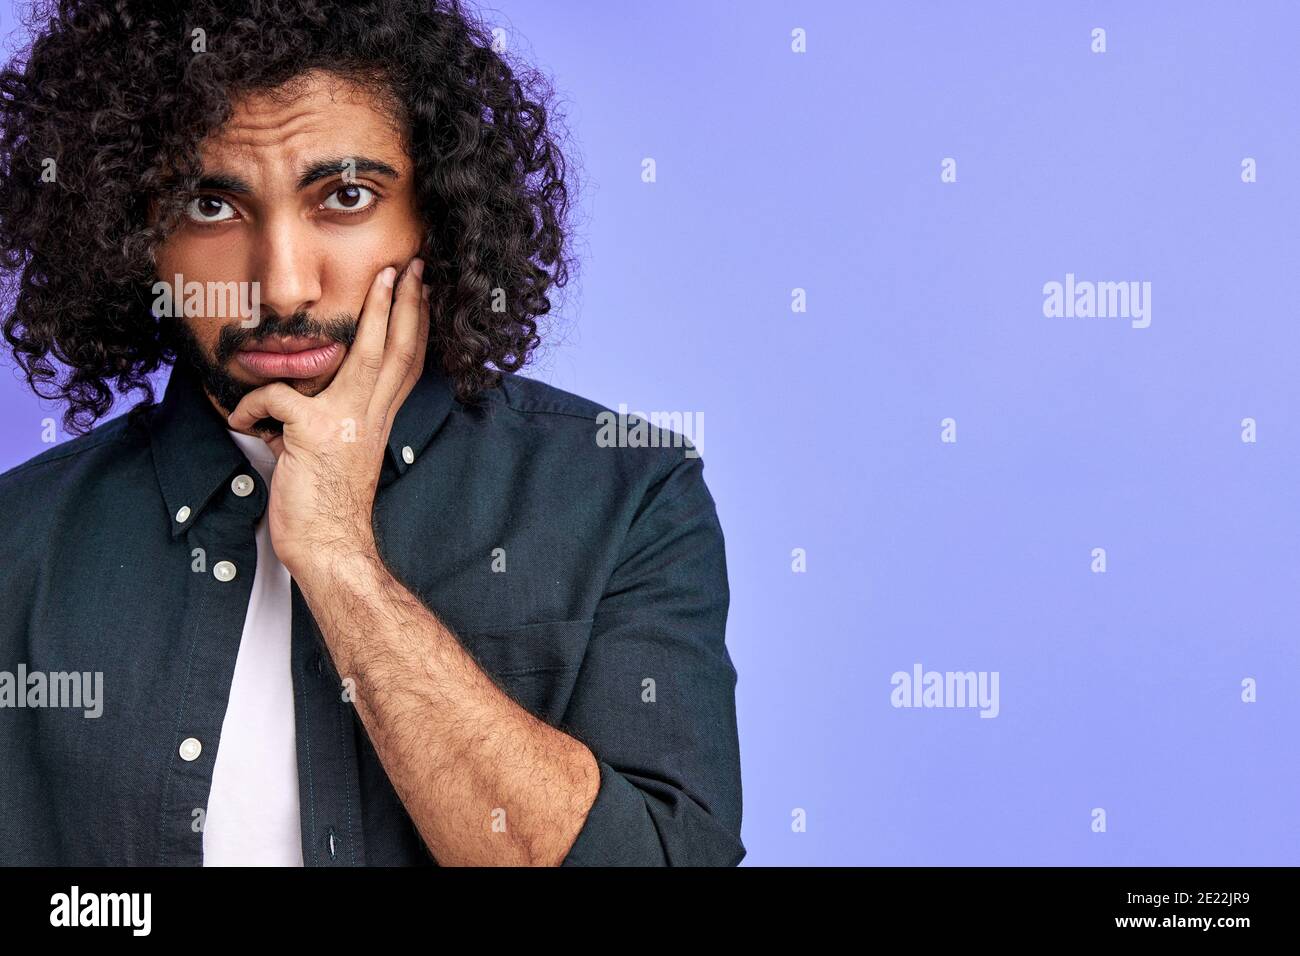 homme arabe mélancolique regarde l'appareil photo avec tristesse, jeune homme dans une chemise décontractée est bouleversé par les nouvelles. isolé sur fond violet Banque D'Images